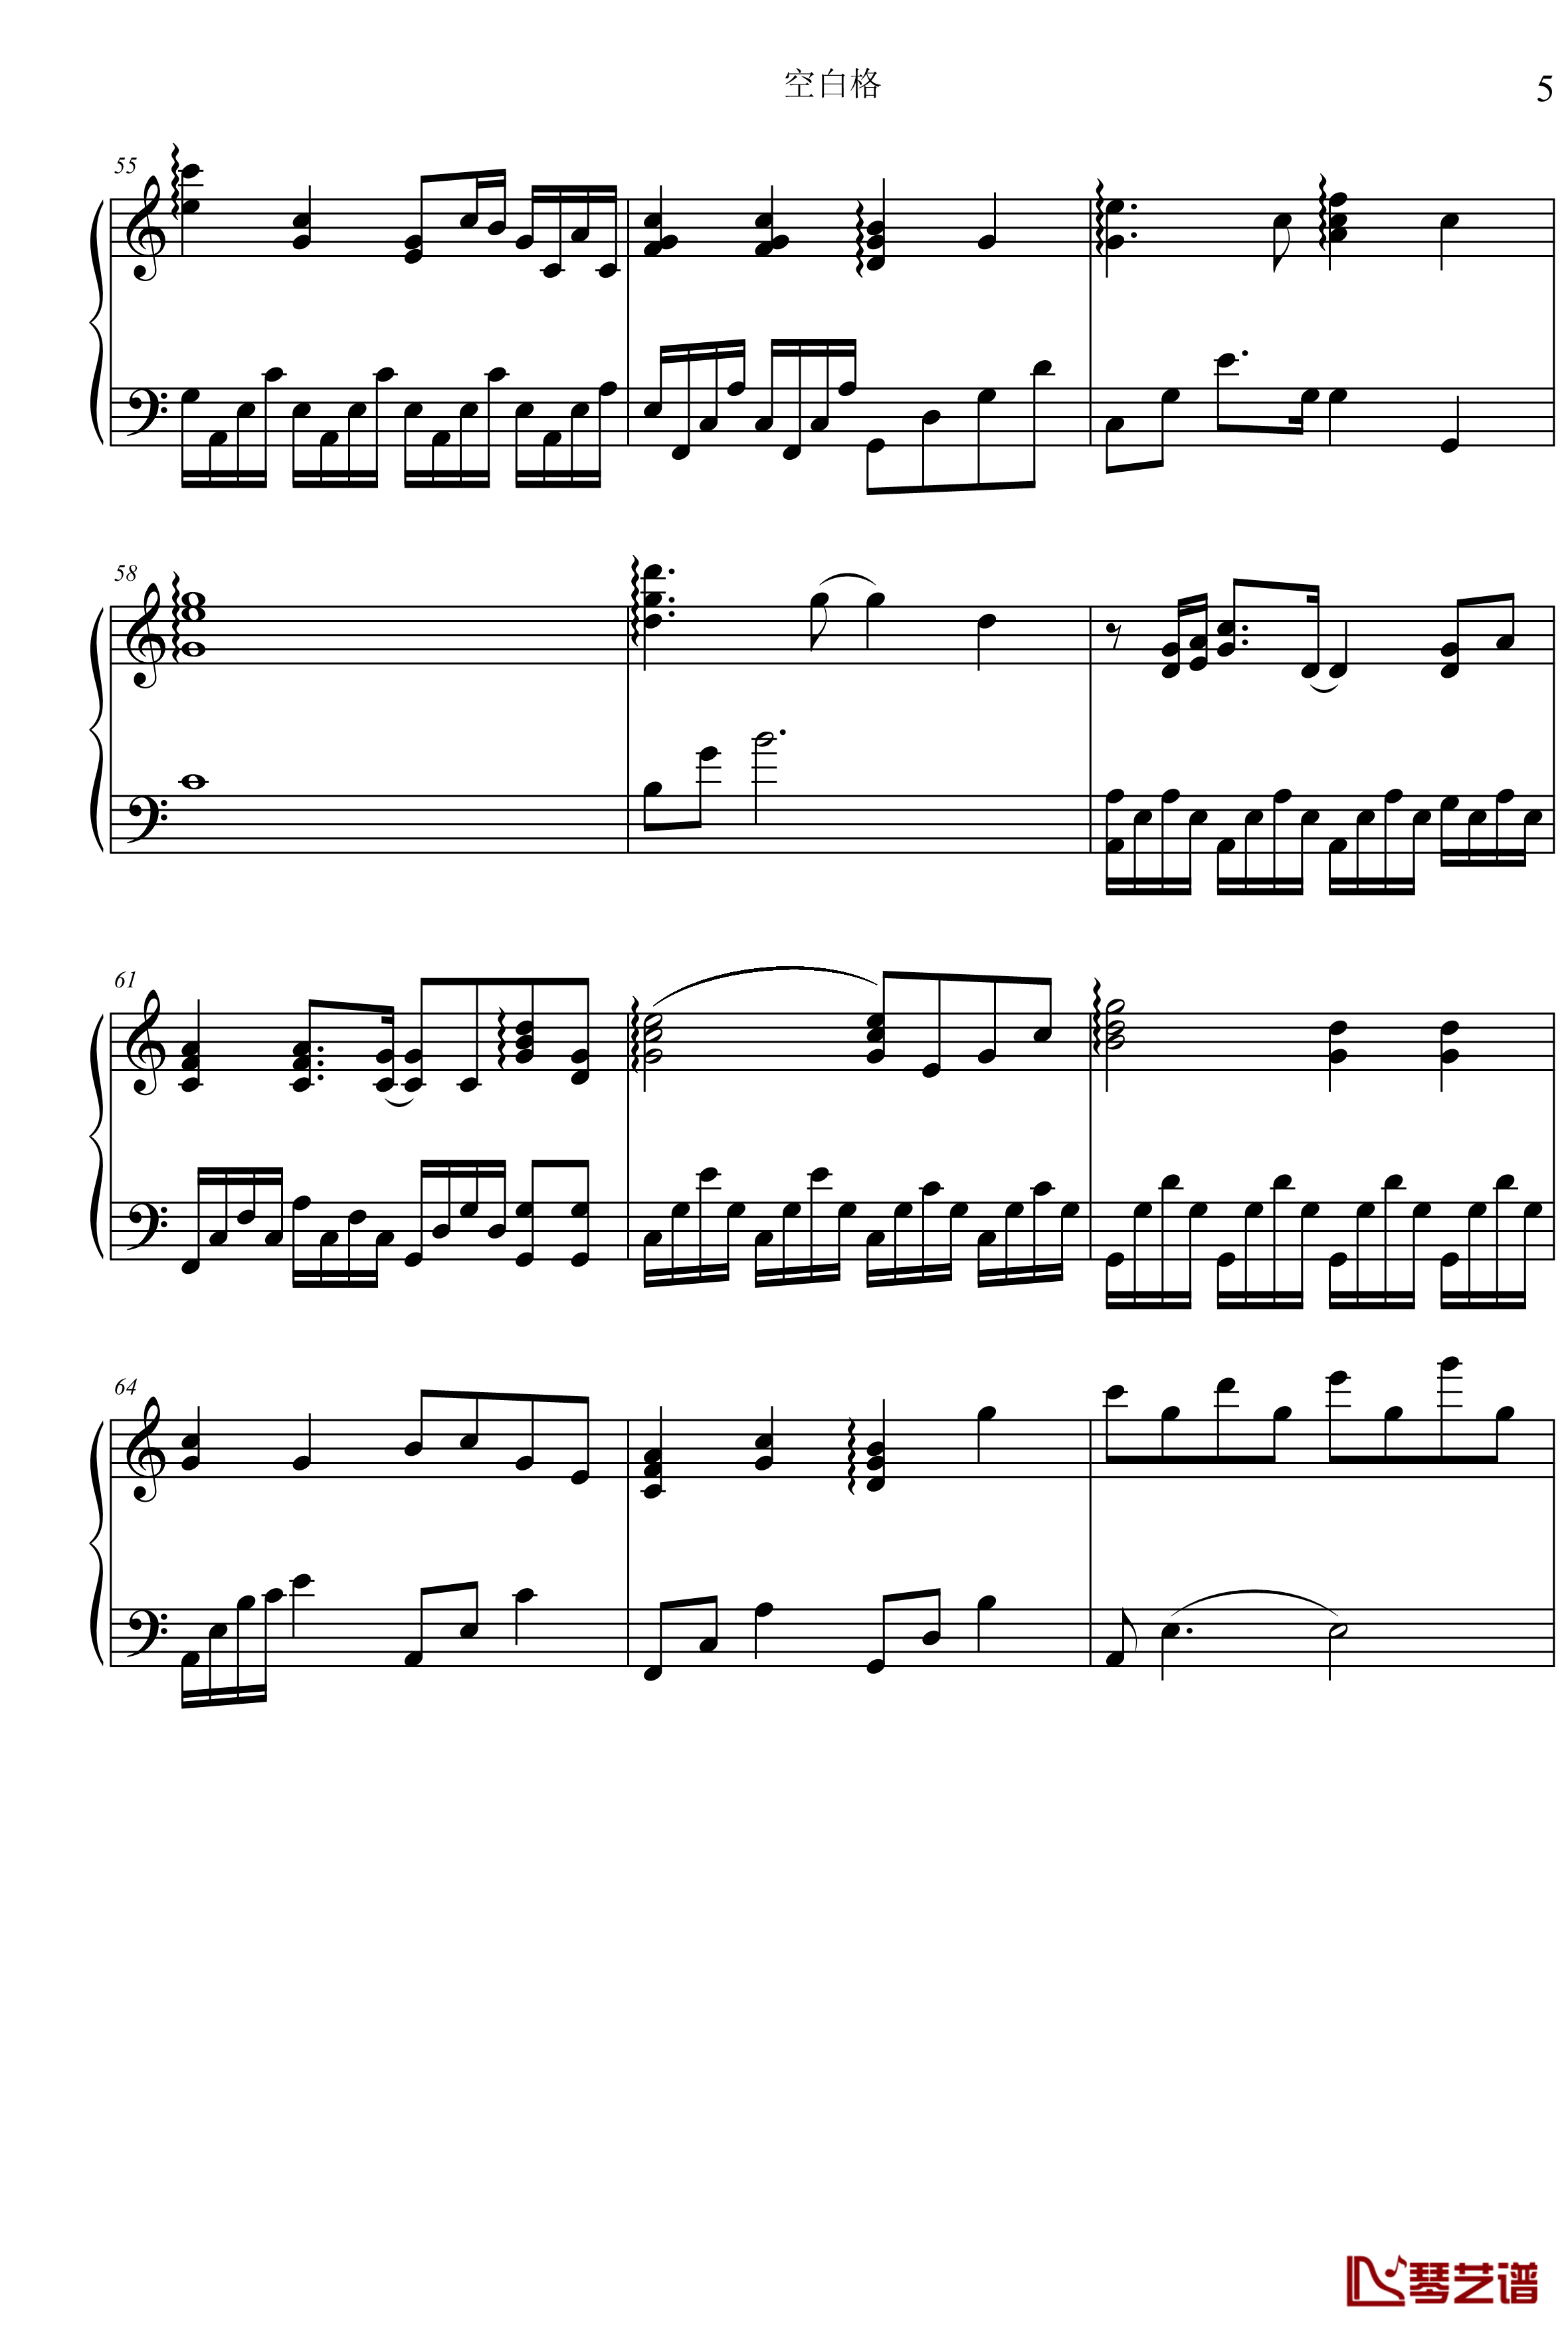 空白格钢琴谱-C调版本-蔡健雅5